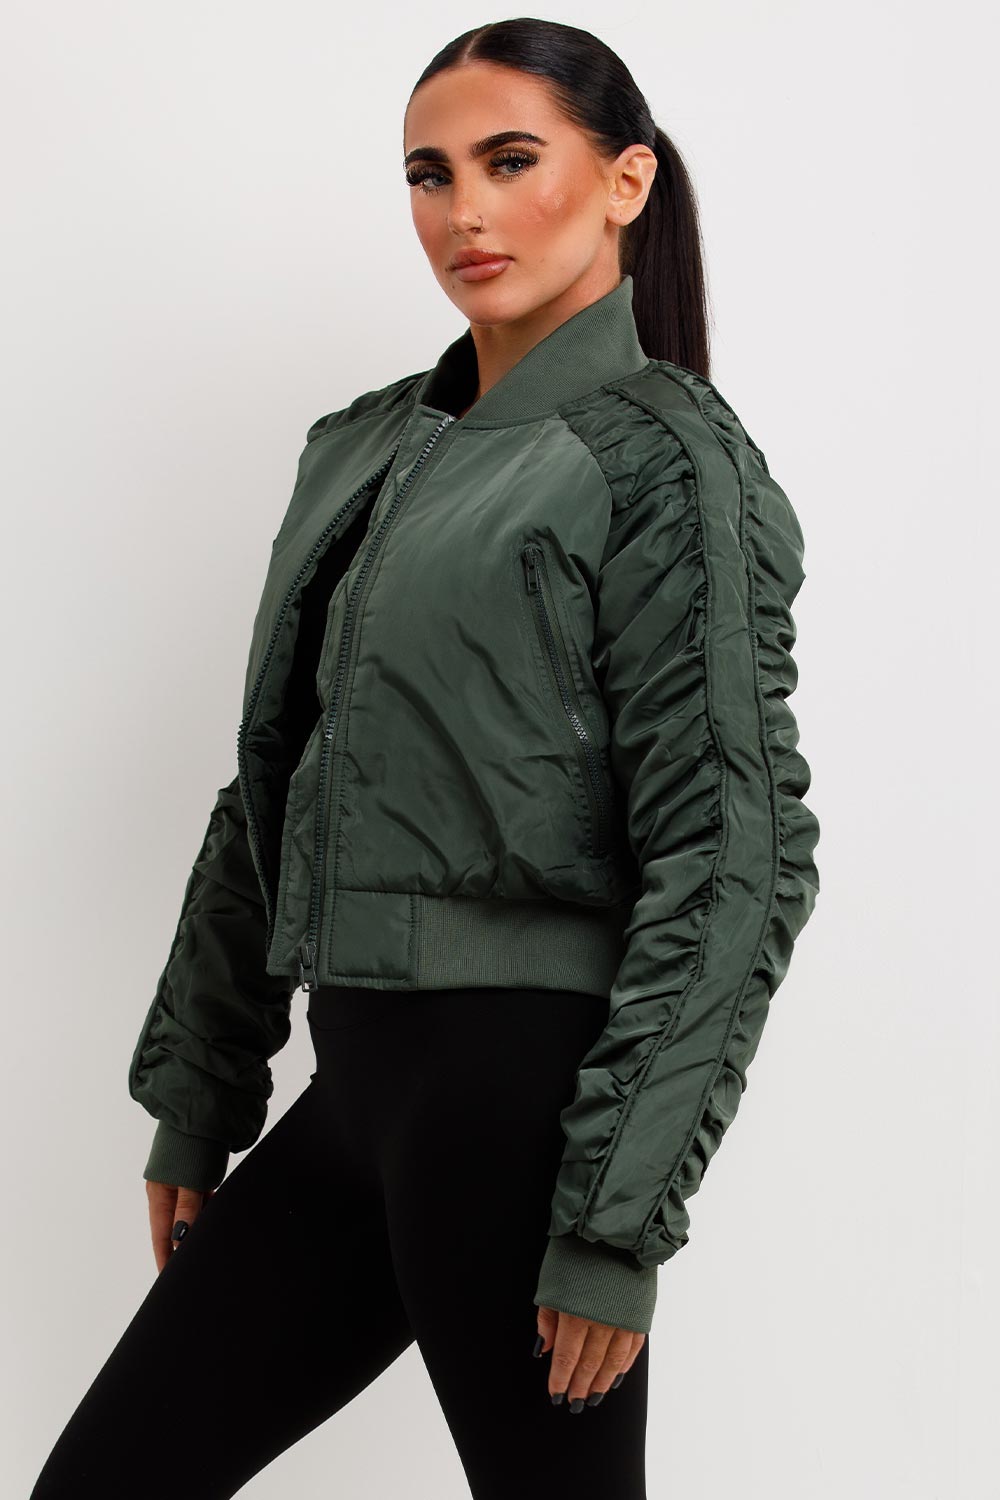 khaki bomber jacket with ruched sleeves